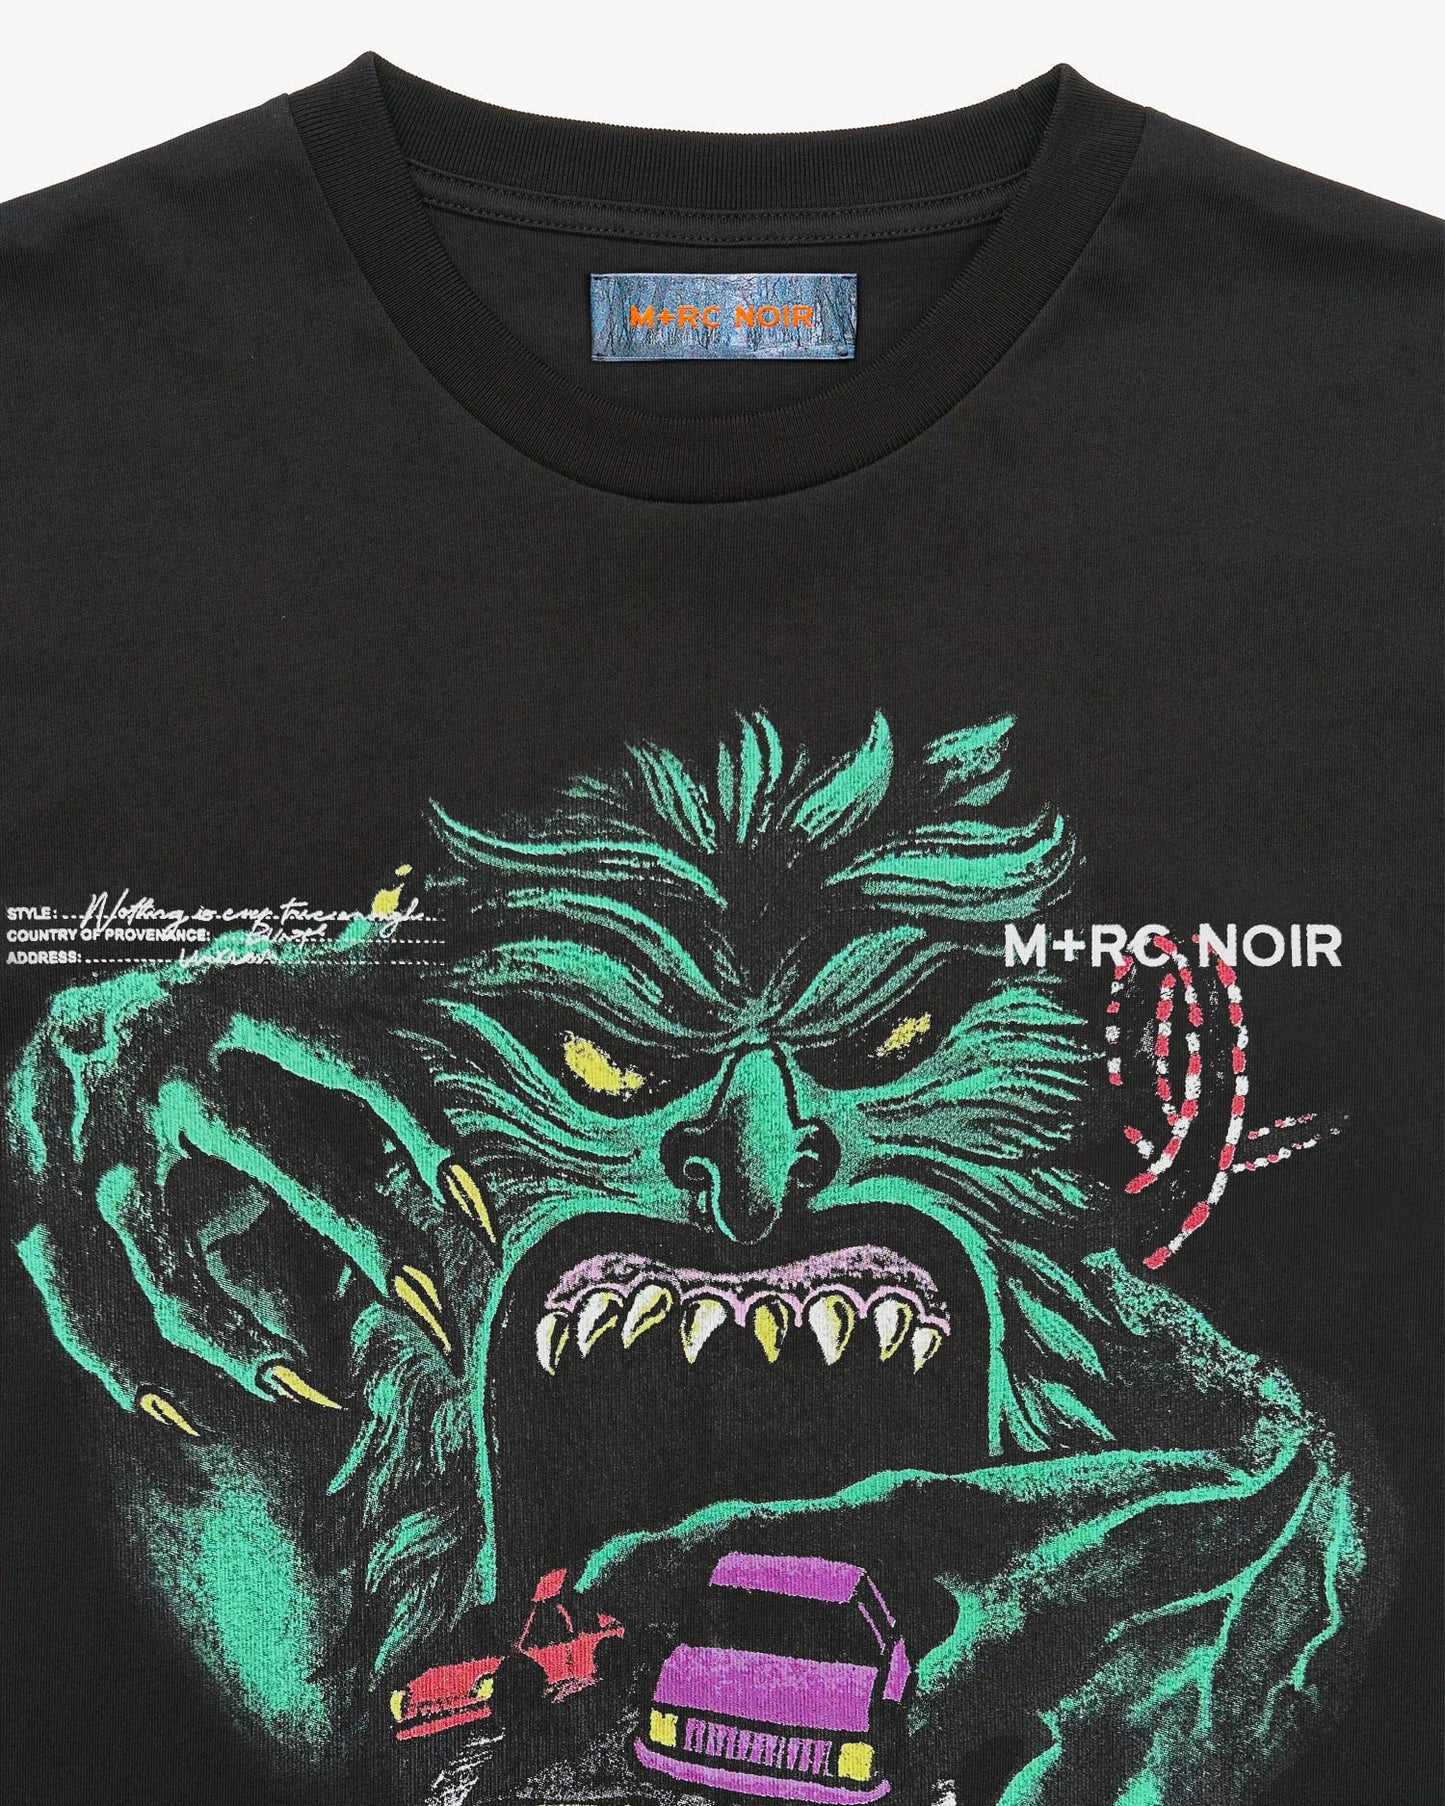 T-shirt "Monster-RC" heavyweight